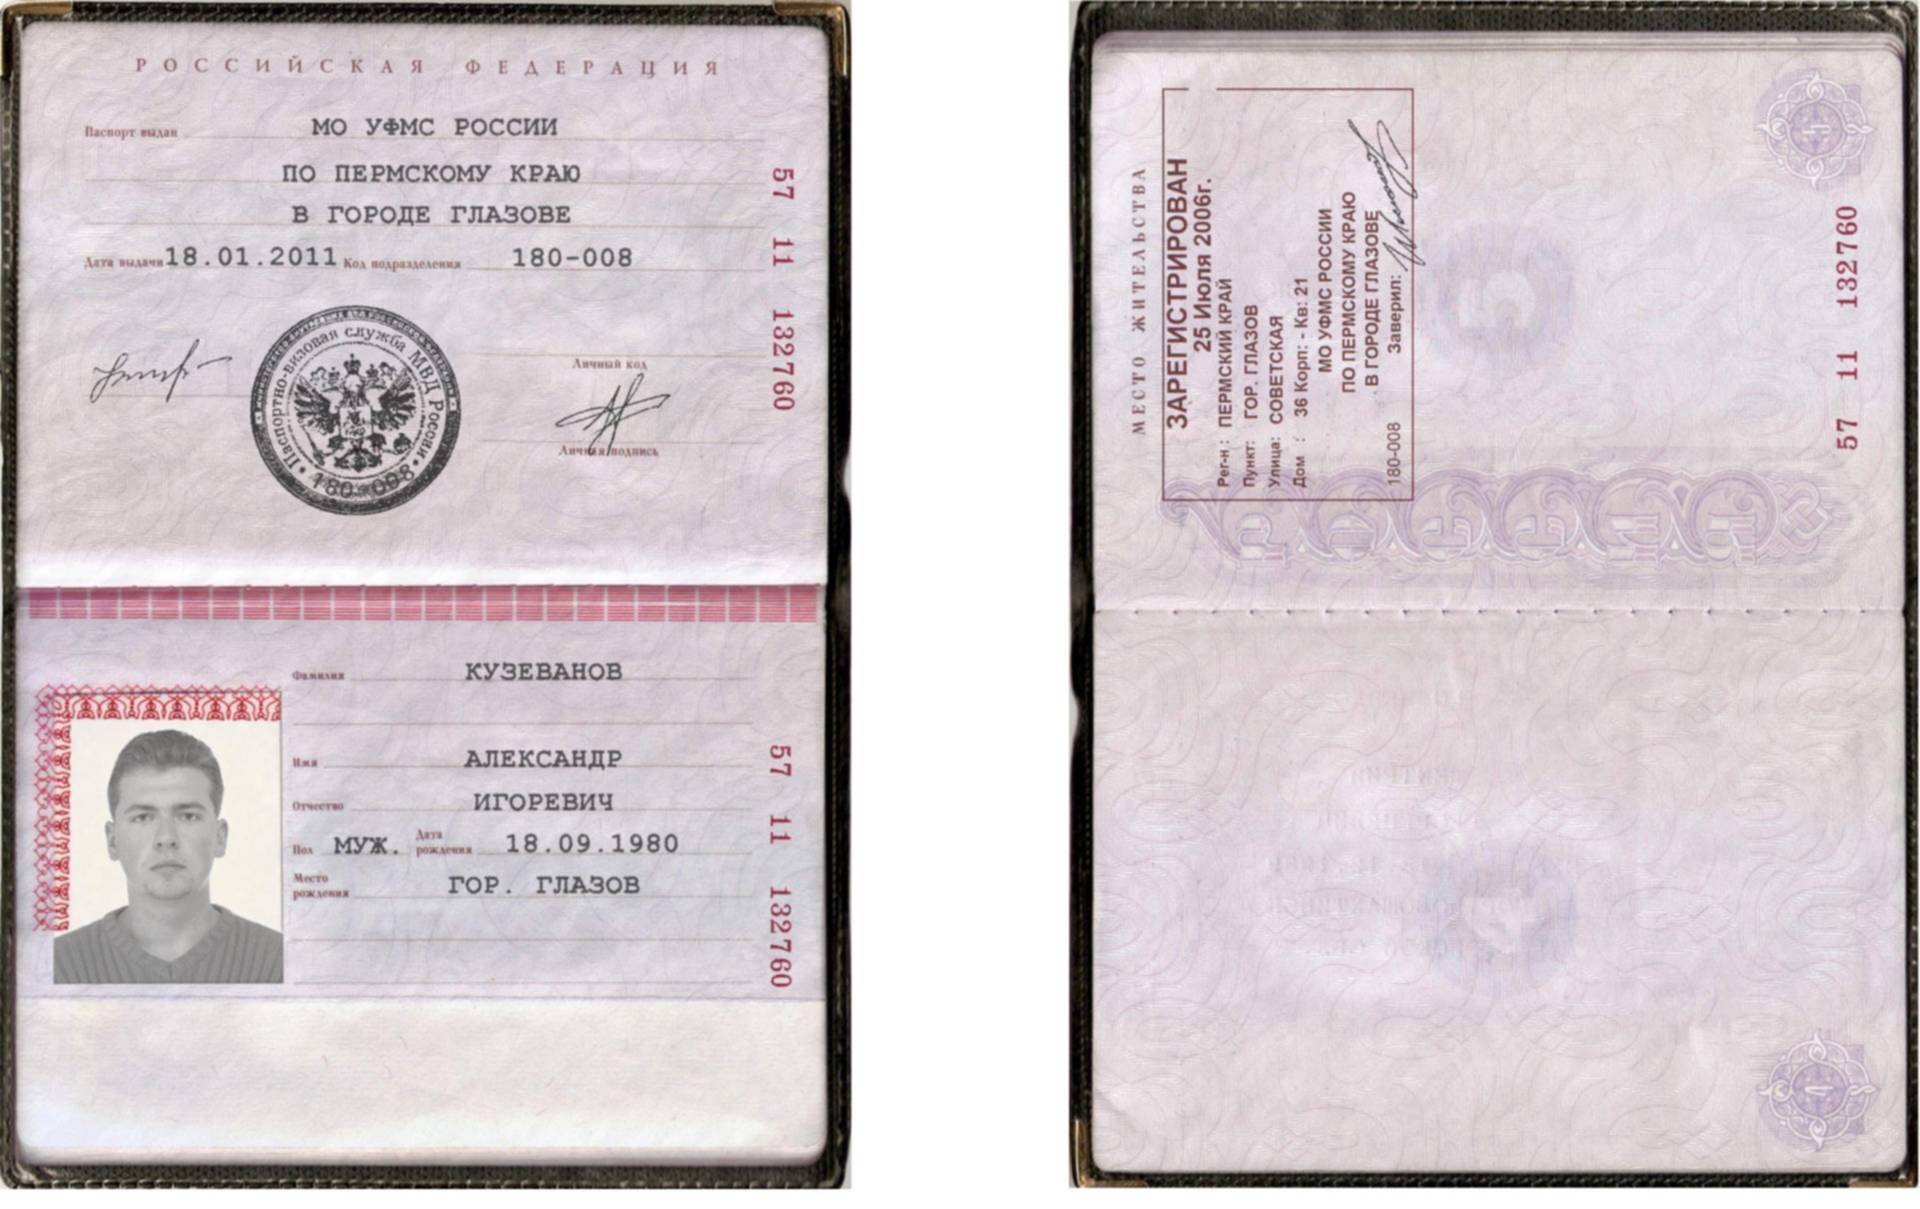 Код подразделения калининского района. Паспортные данные с пропиской.